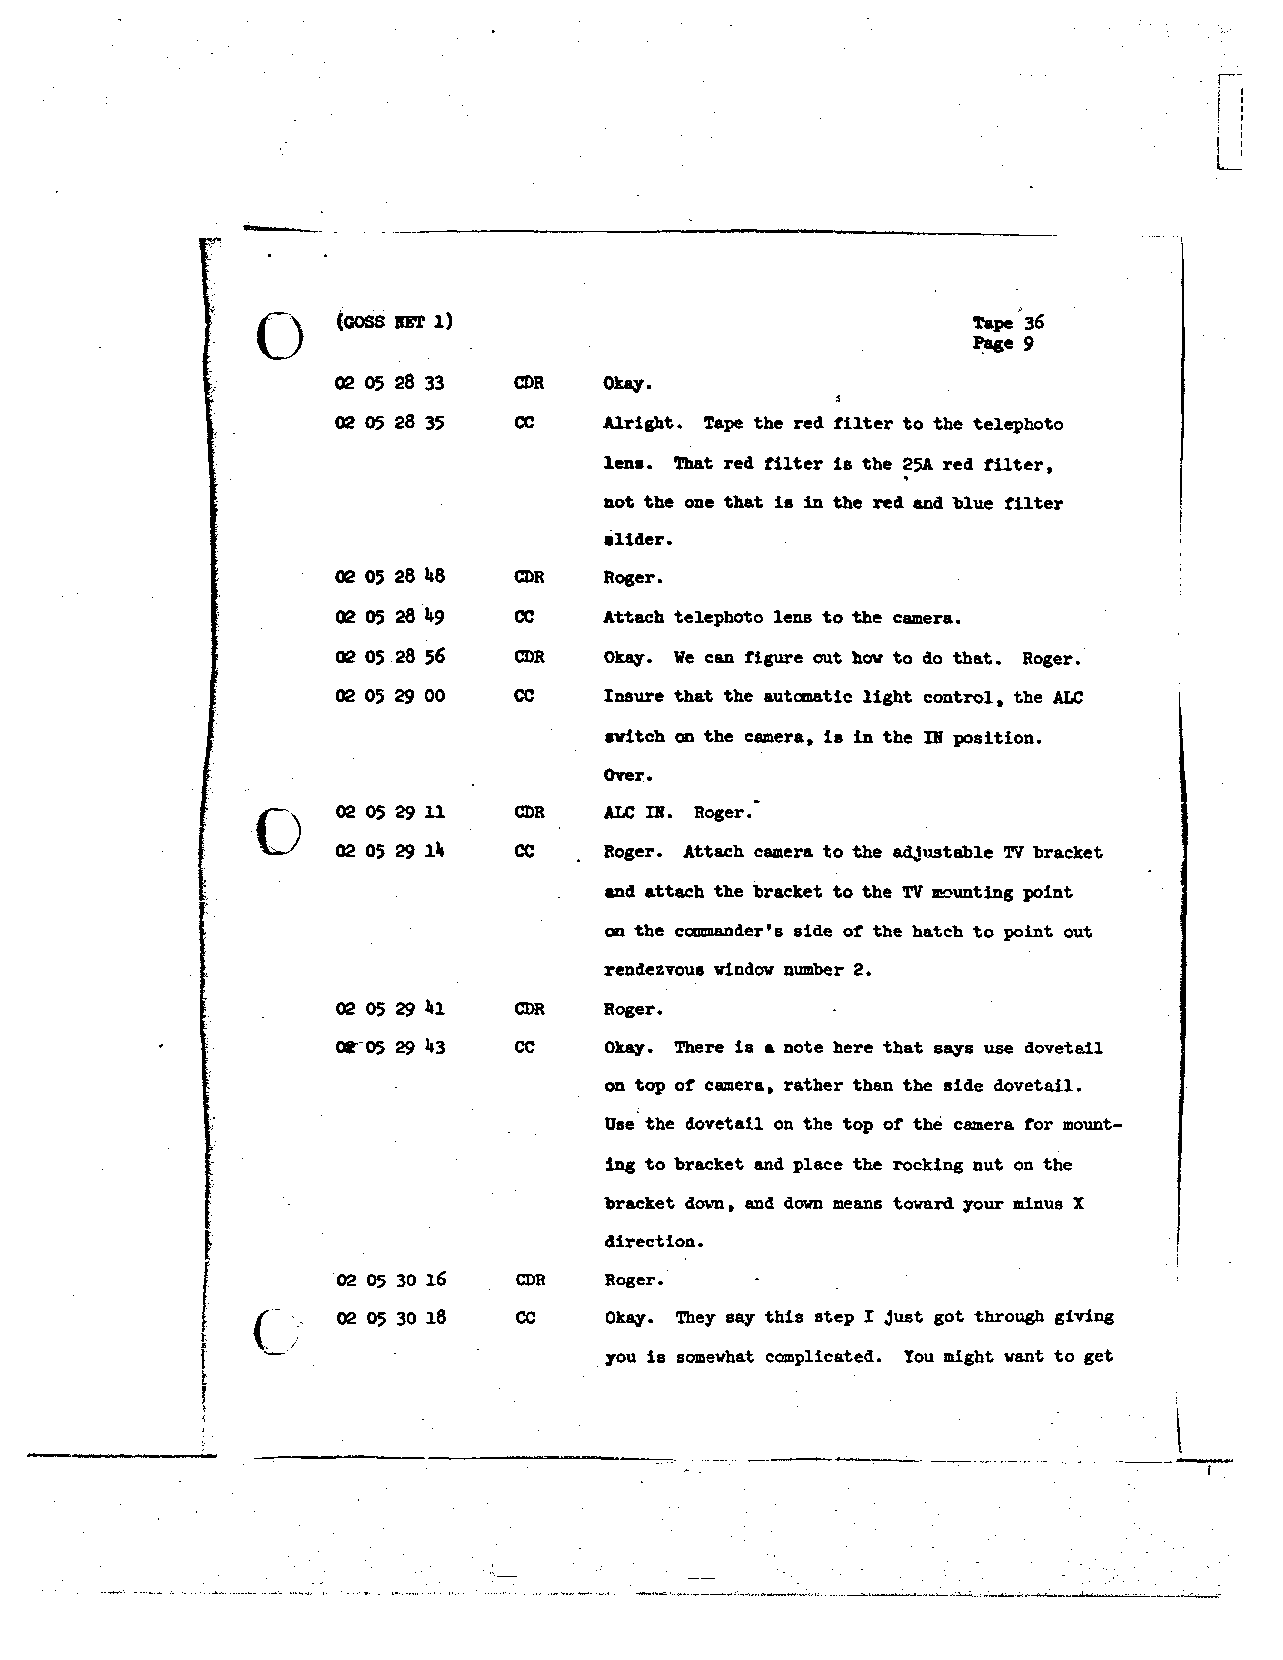 Page 279 of Apollo 8’s original transcript